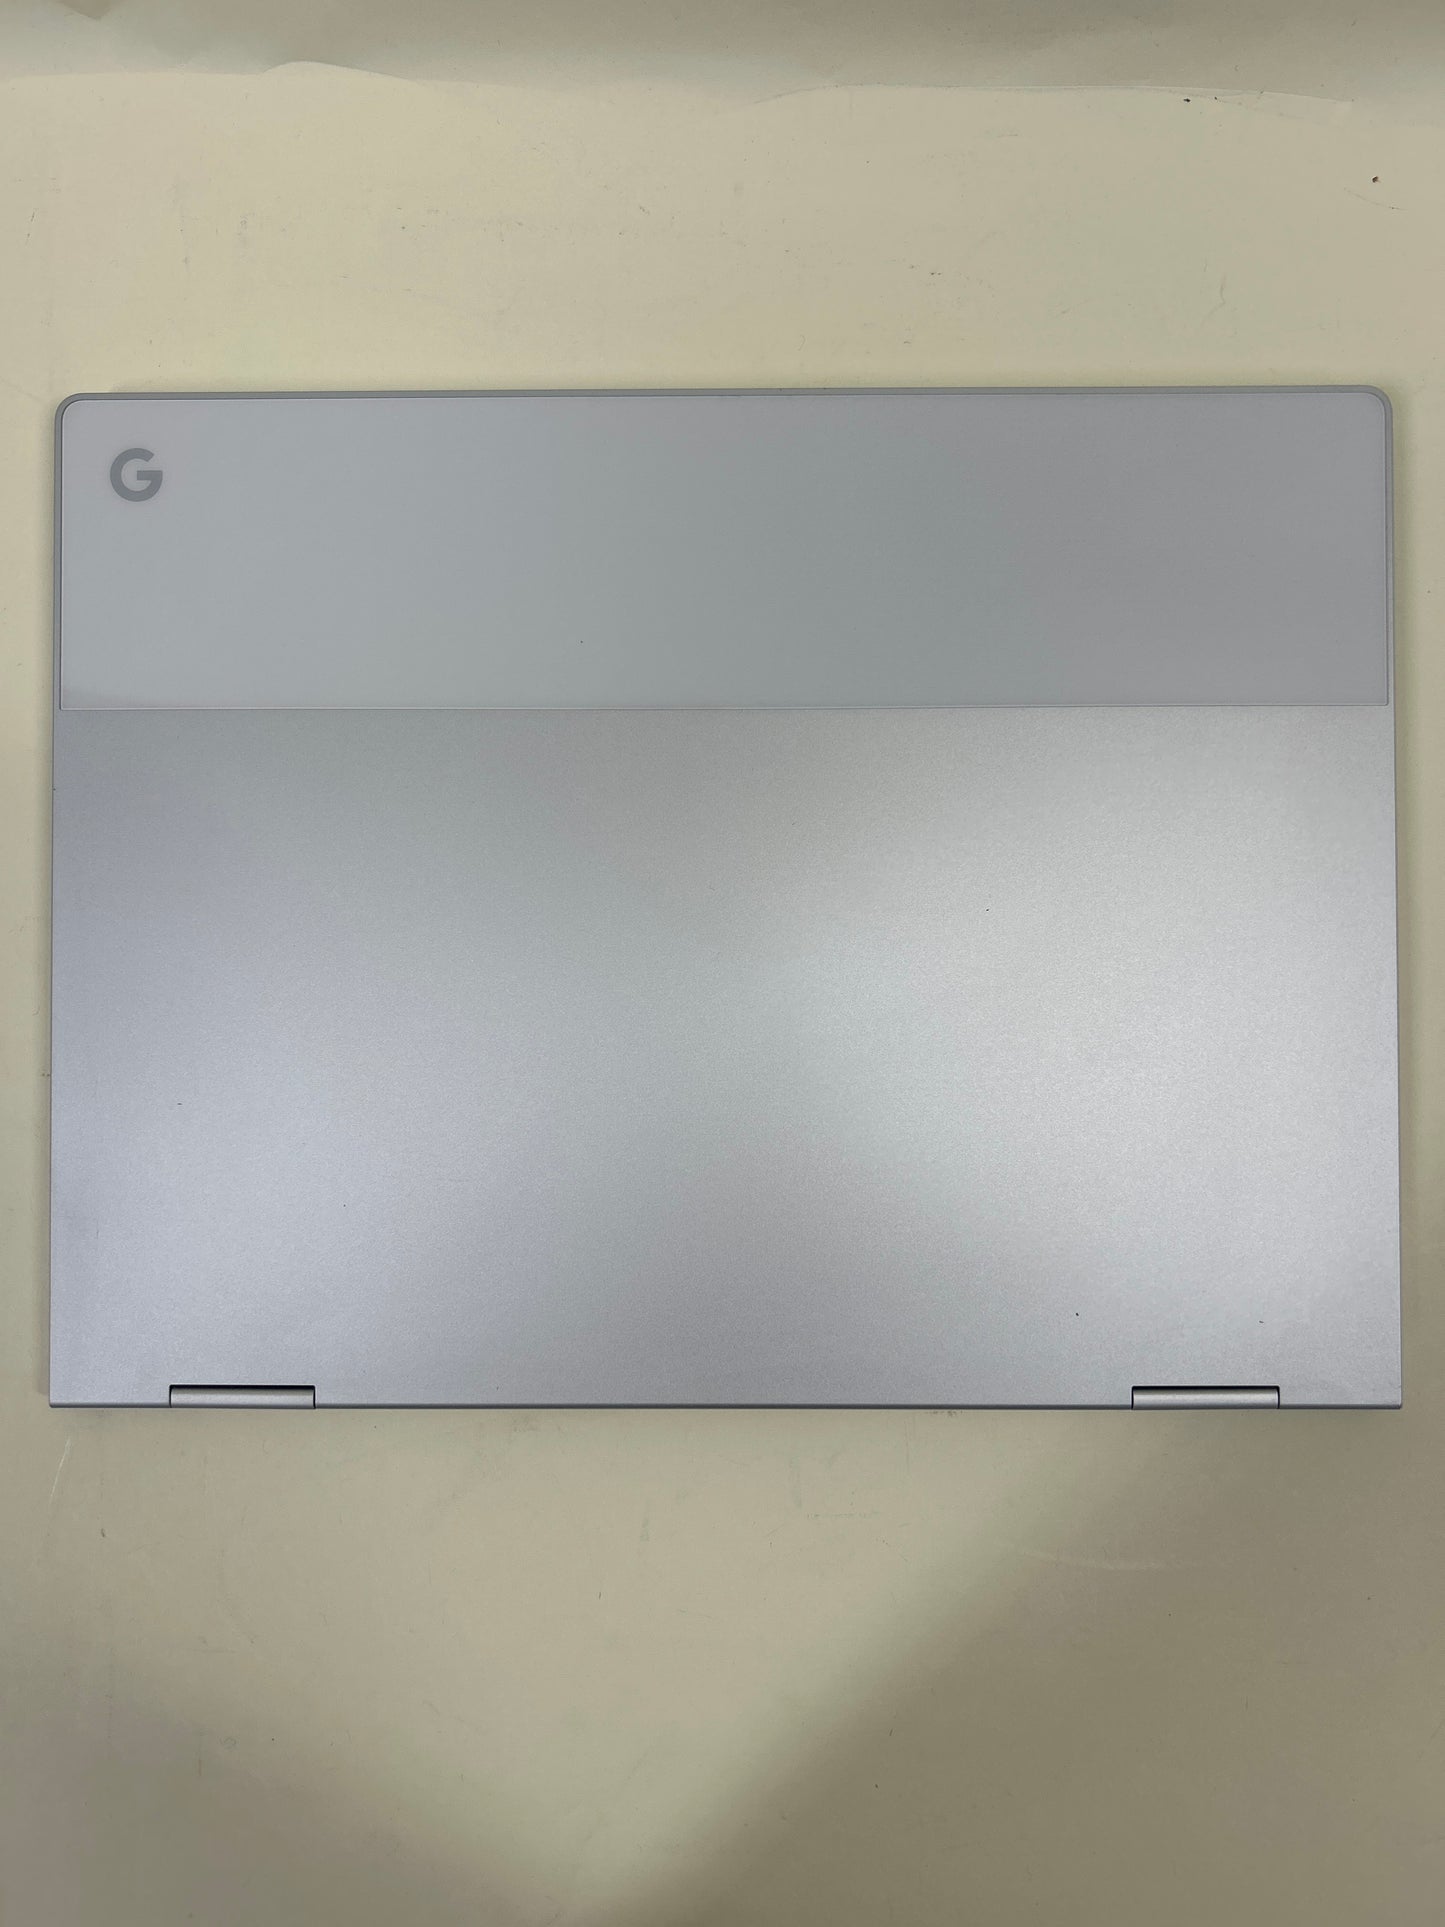 Google Pixelbook C0A 12.3" i5-7Y57 1.2GHz 8GB RAM 128GB SSD 2-in-1